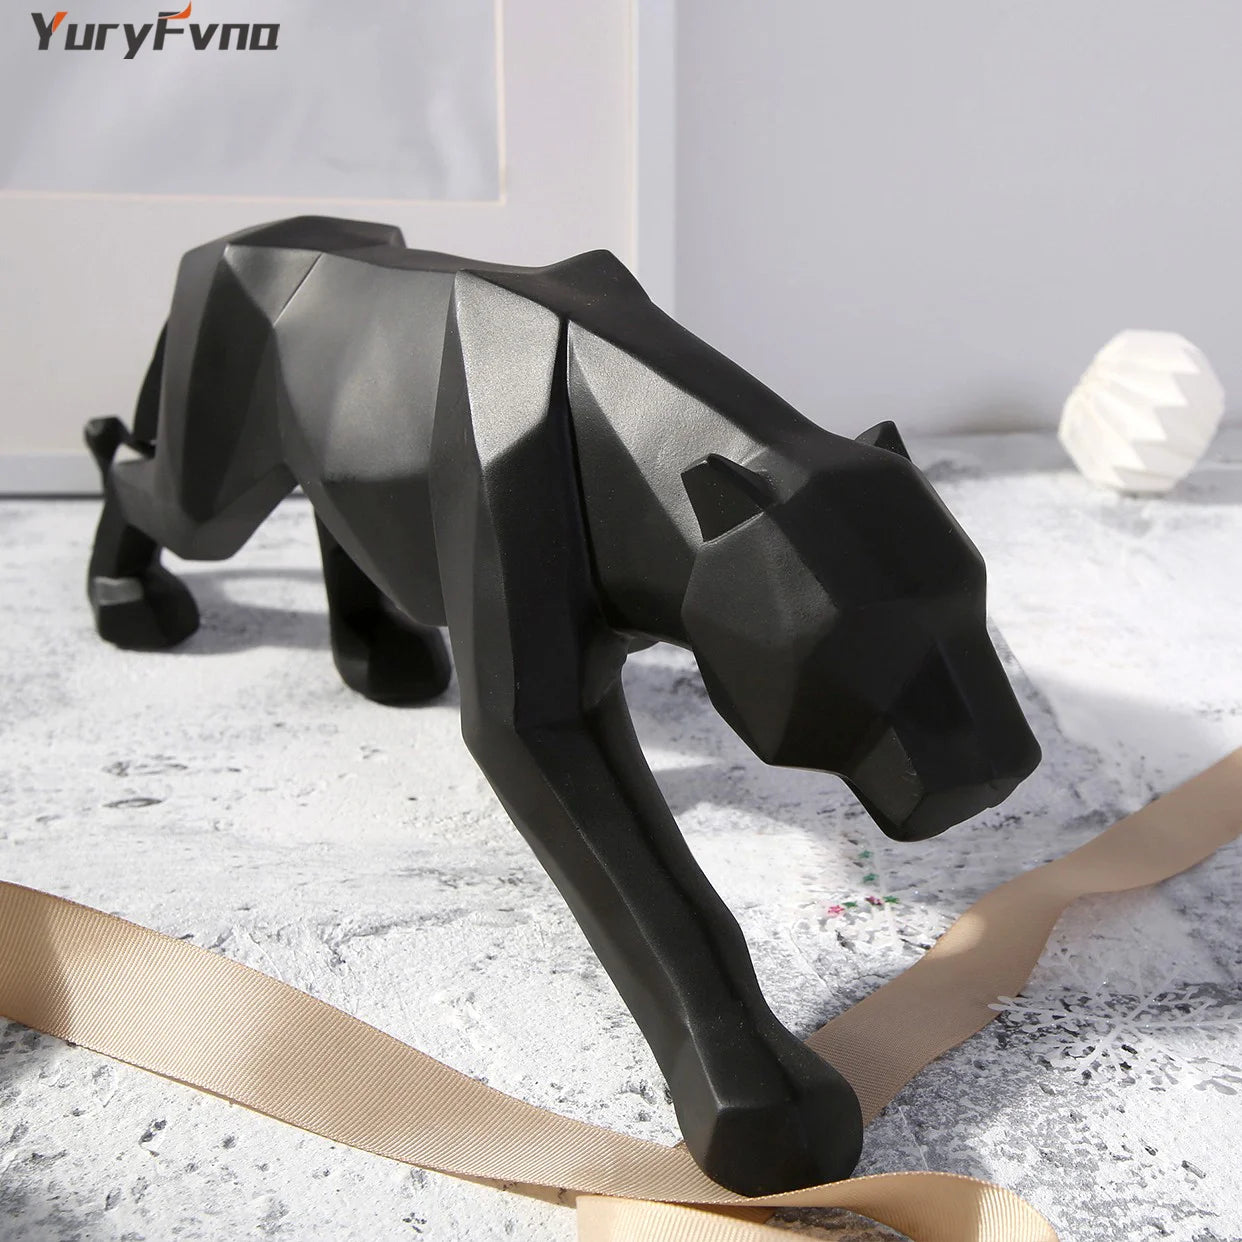 Yuryfvna abstrak resin macan tutul patung geometris margasatwa manther pather patung hewan patung hewan dekorasi kantor rumah modern